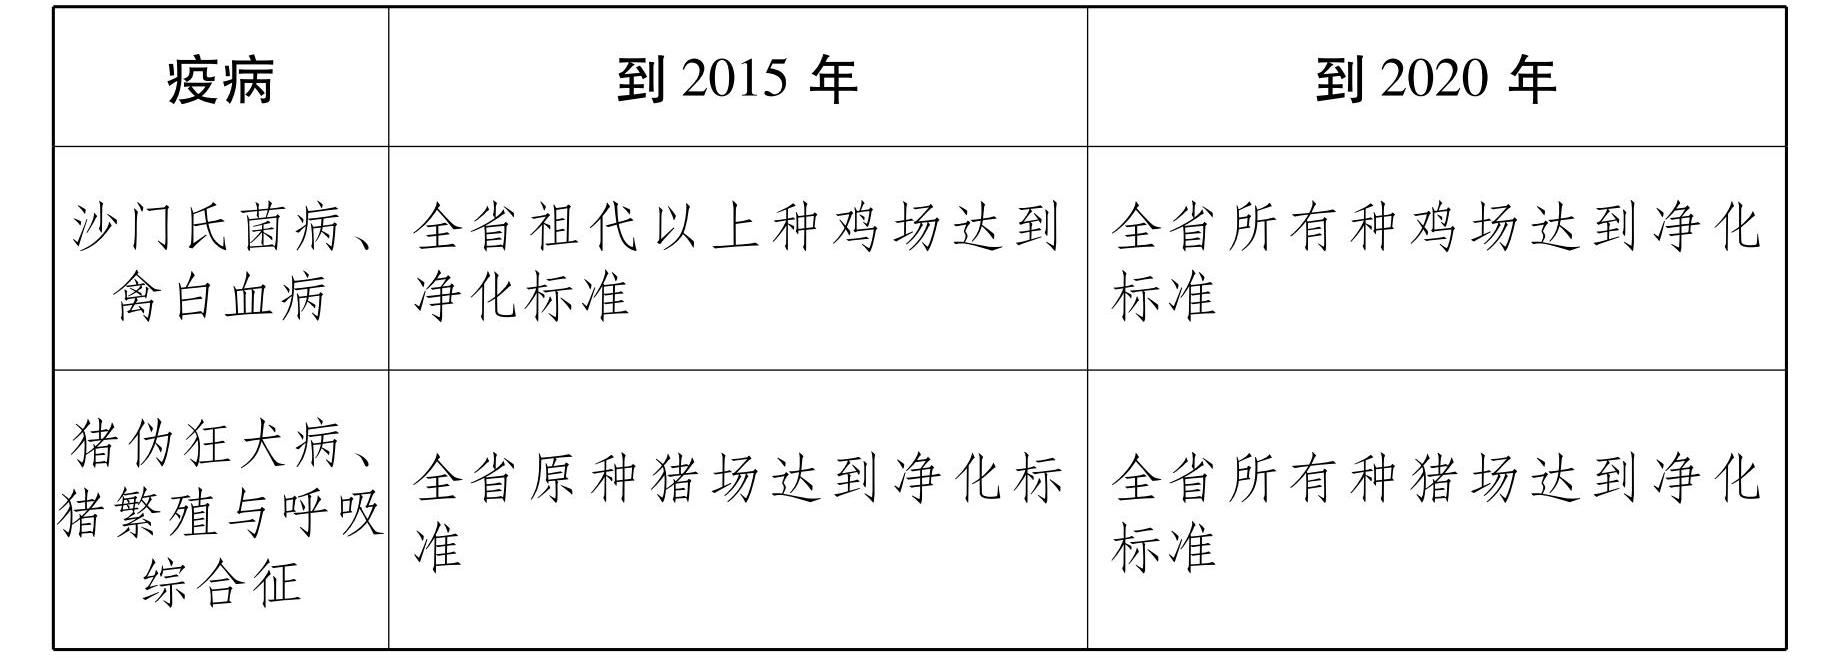 云南省人民政府办公厅关于印发云南省中长期动物疫病防治规划 （2014—2020年） 的通知_14.jpg